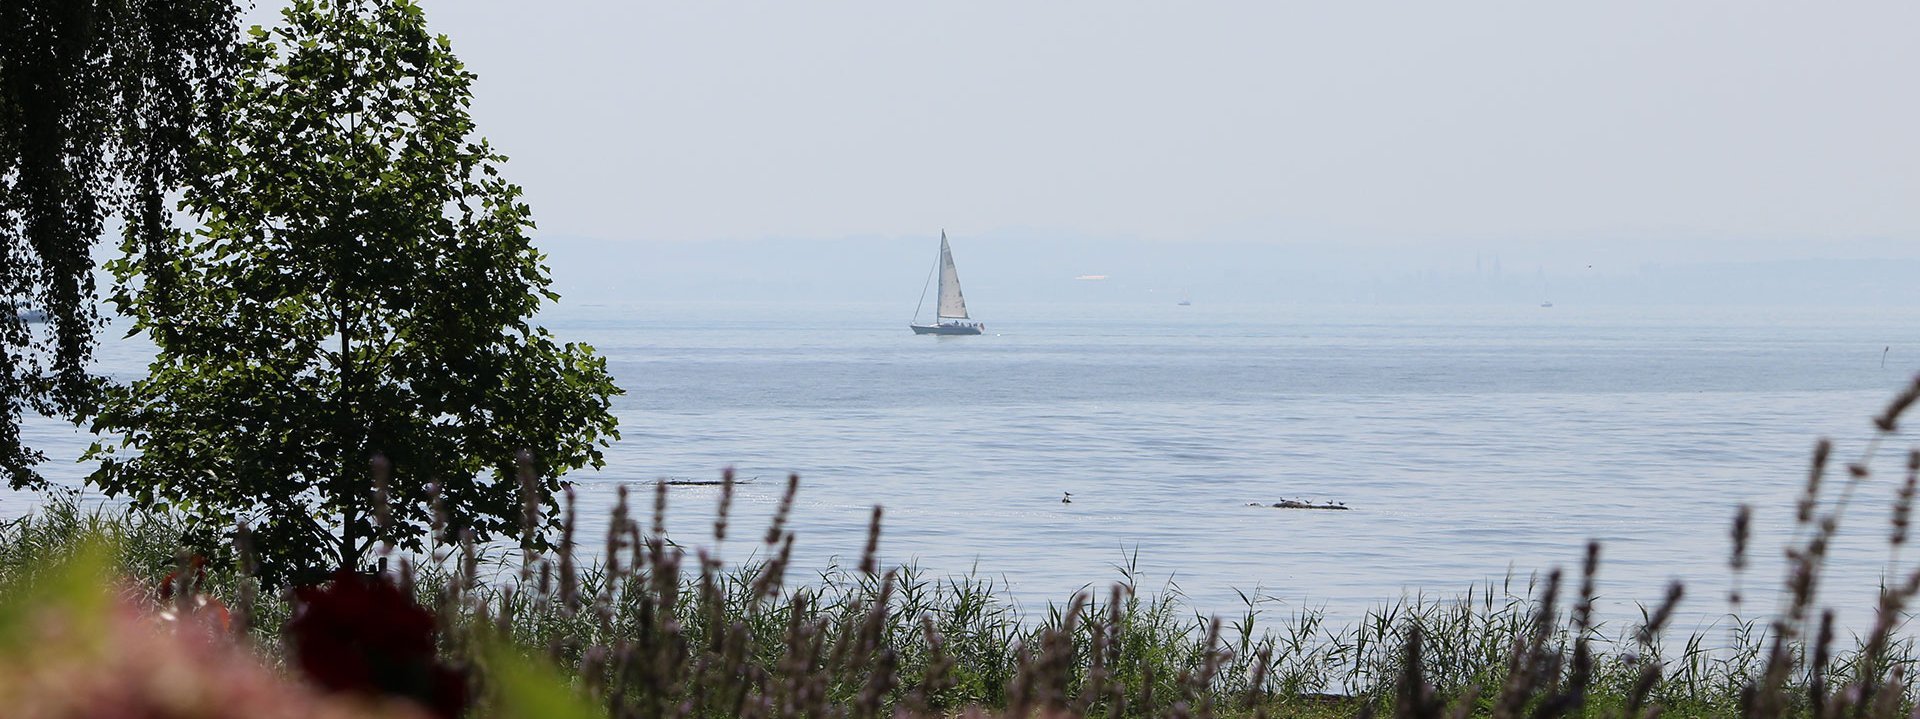 Bild des Bodensees an einem nebeligen Tag. Auf dem Bodensee fährt ein Segelboot.